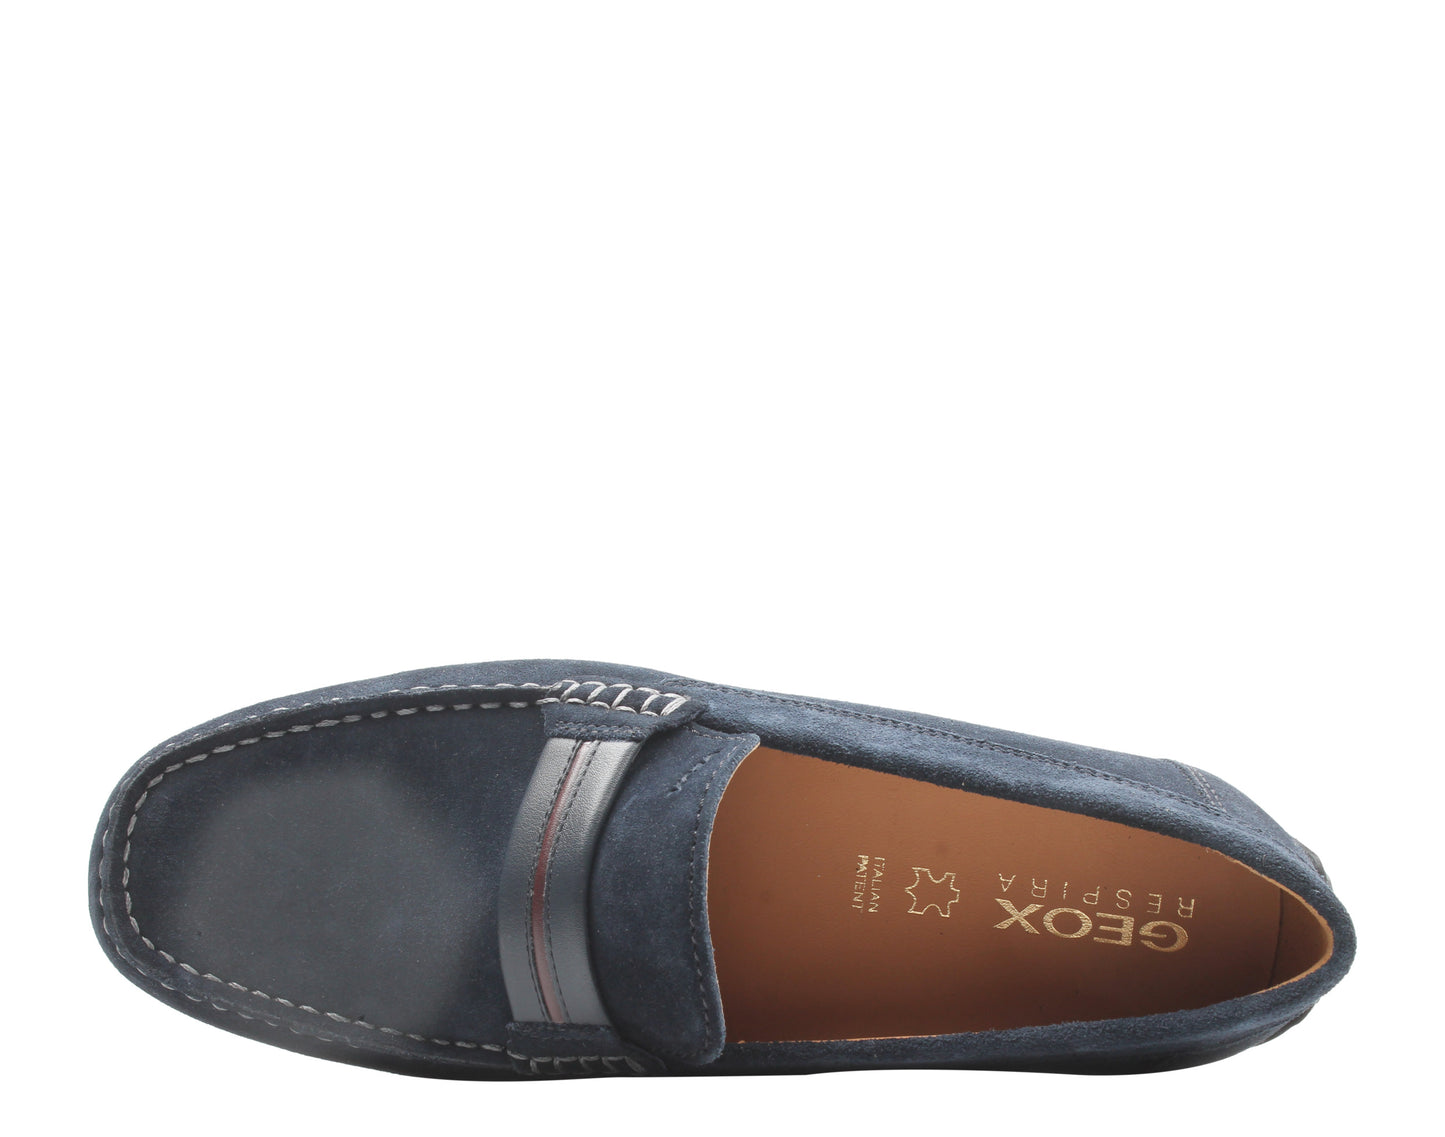 Geox Moner Mocassin Loafer Navy Suede Men's Shoes U0244A-00022-C4002